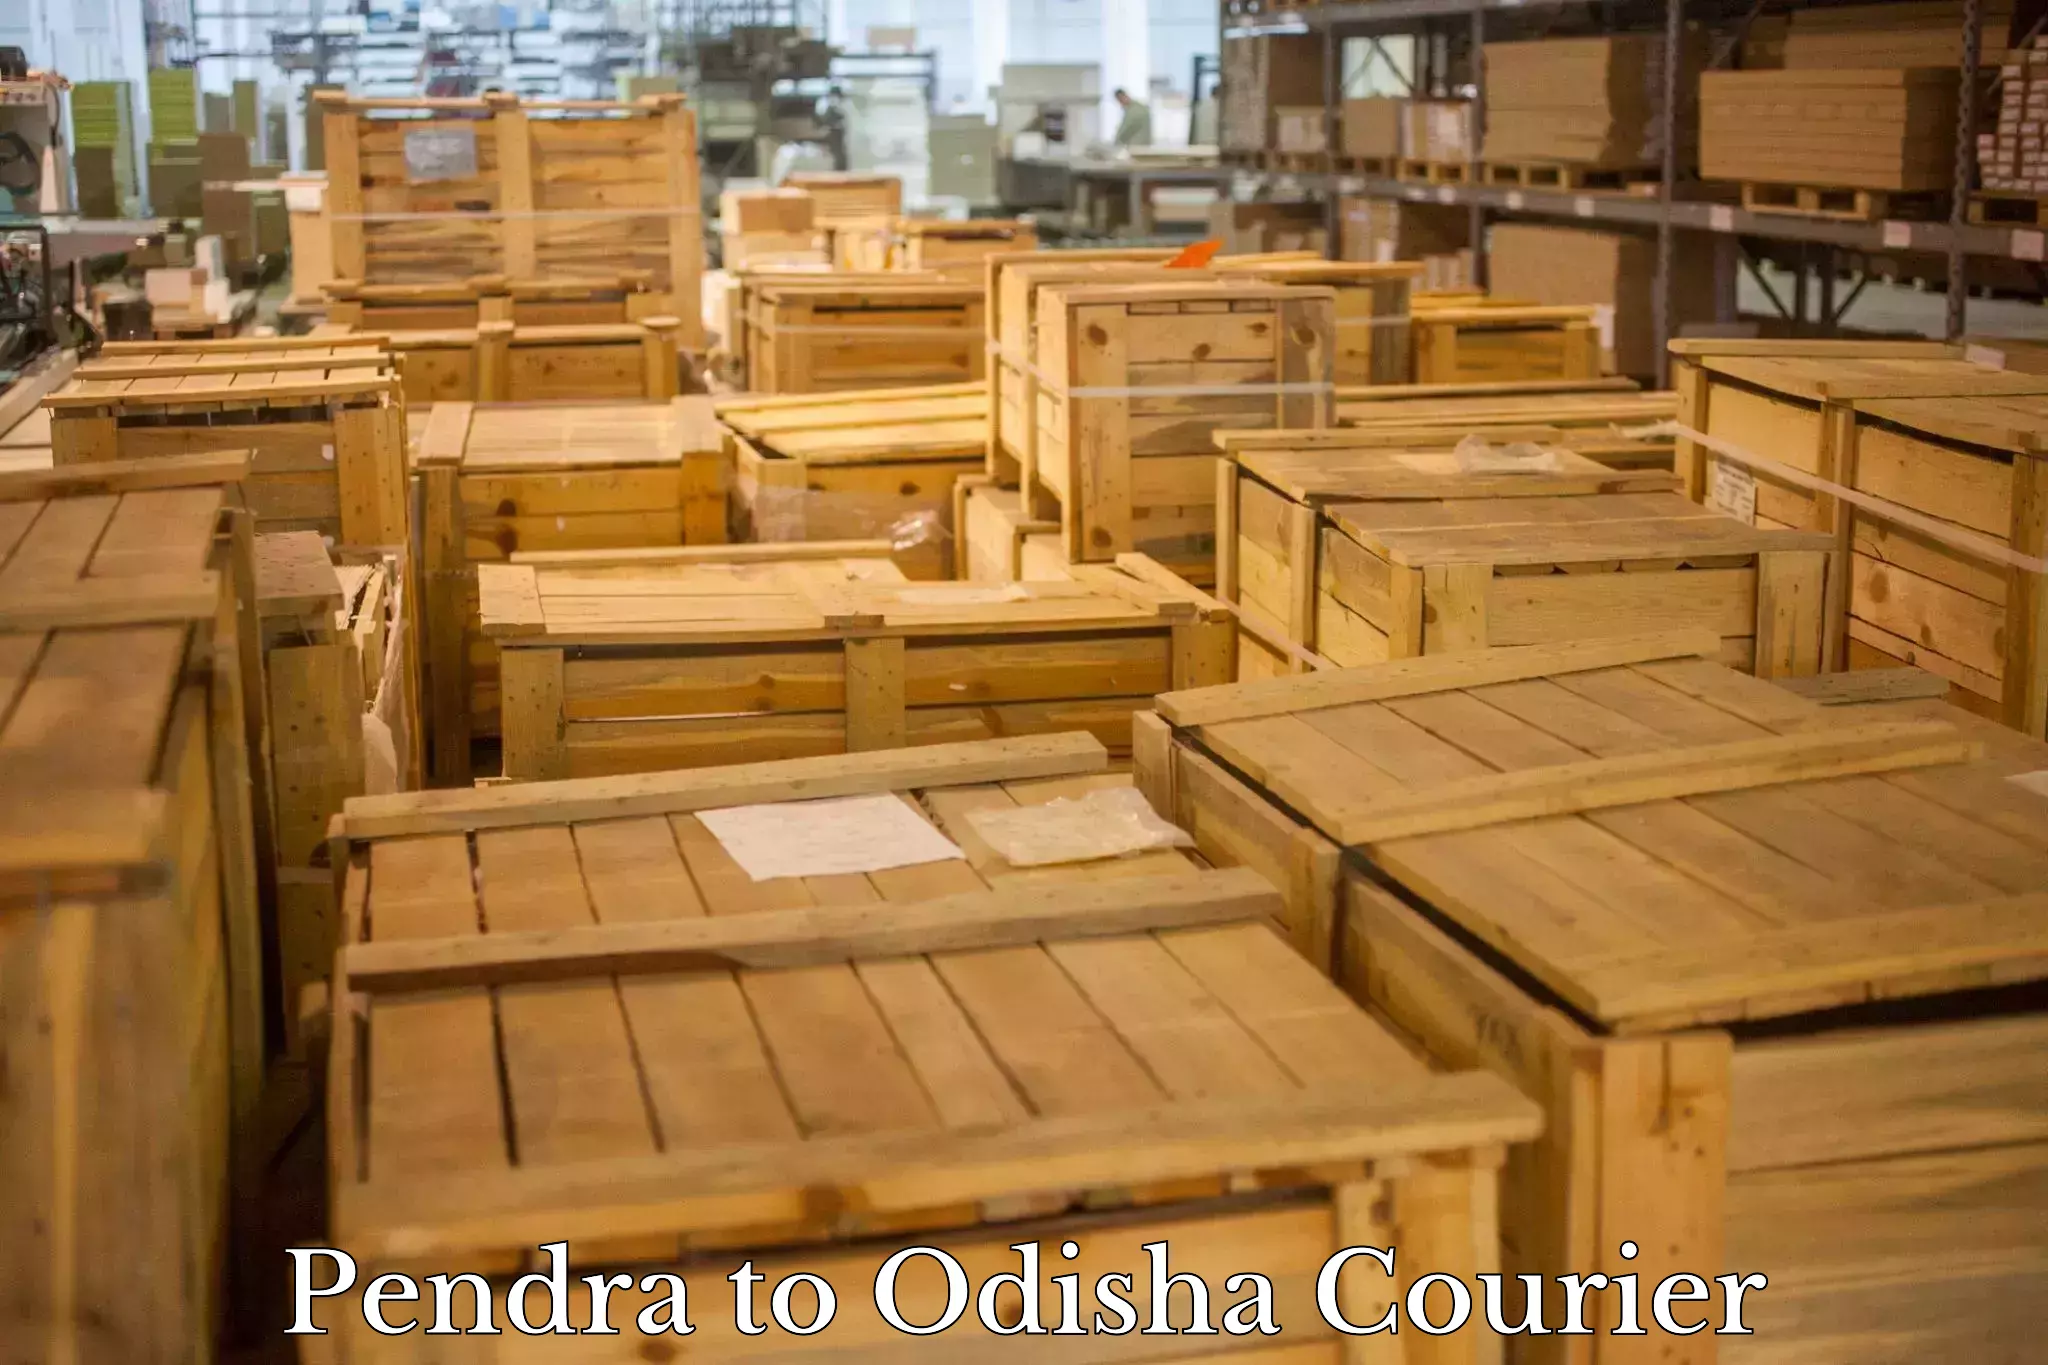 International logistics Pendra to Odisha